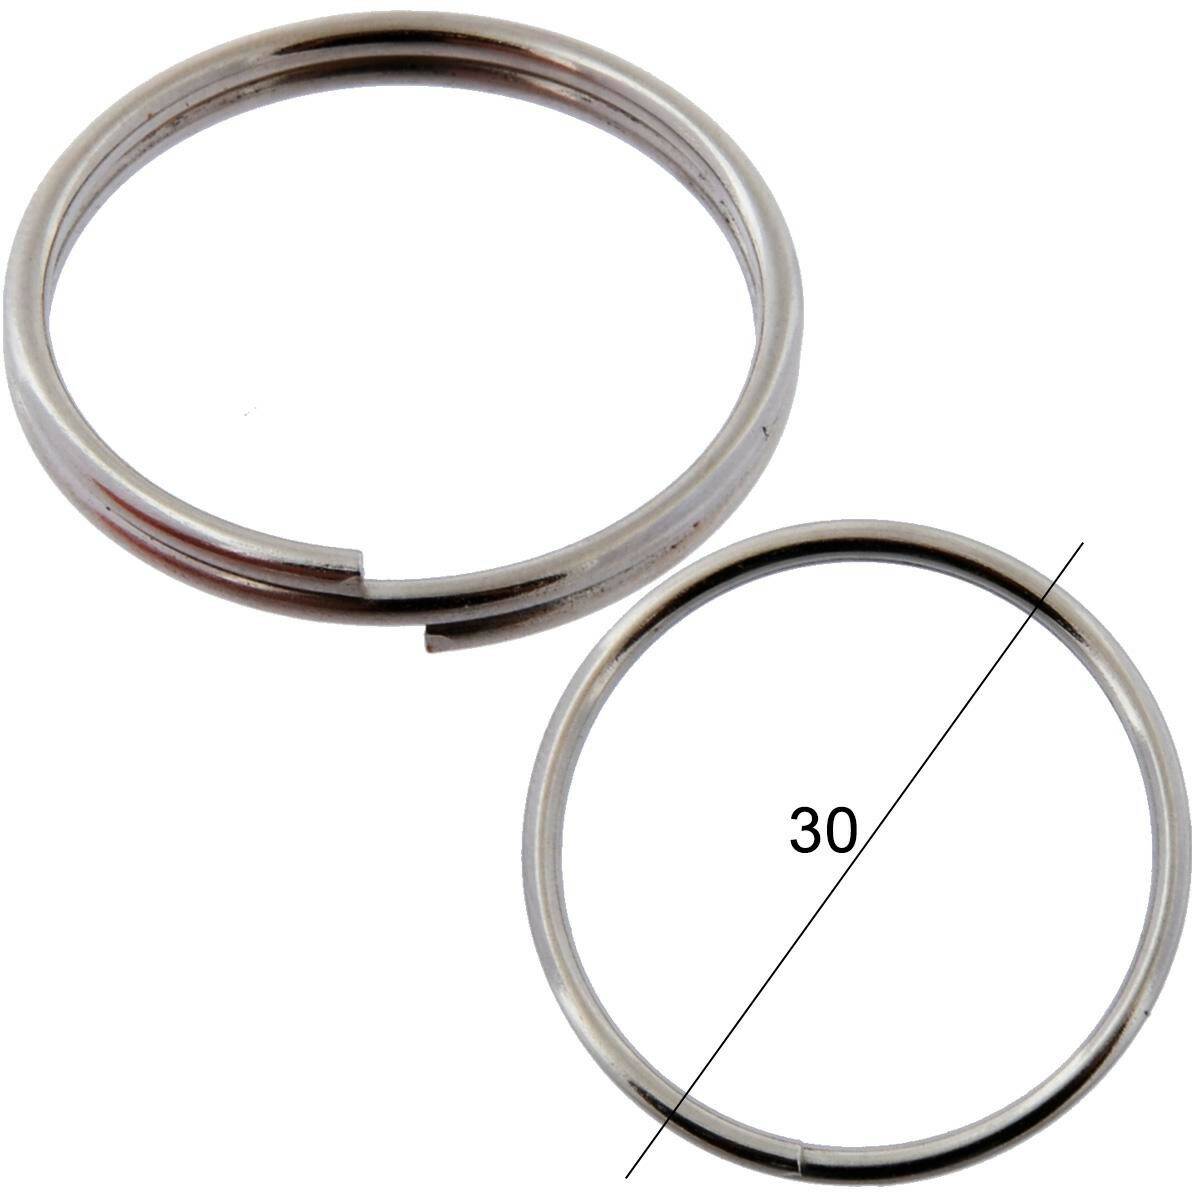 Key rings for keys WIS normal diameter 30mm